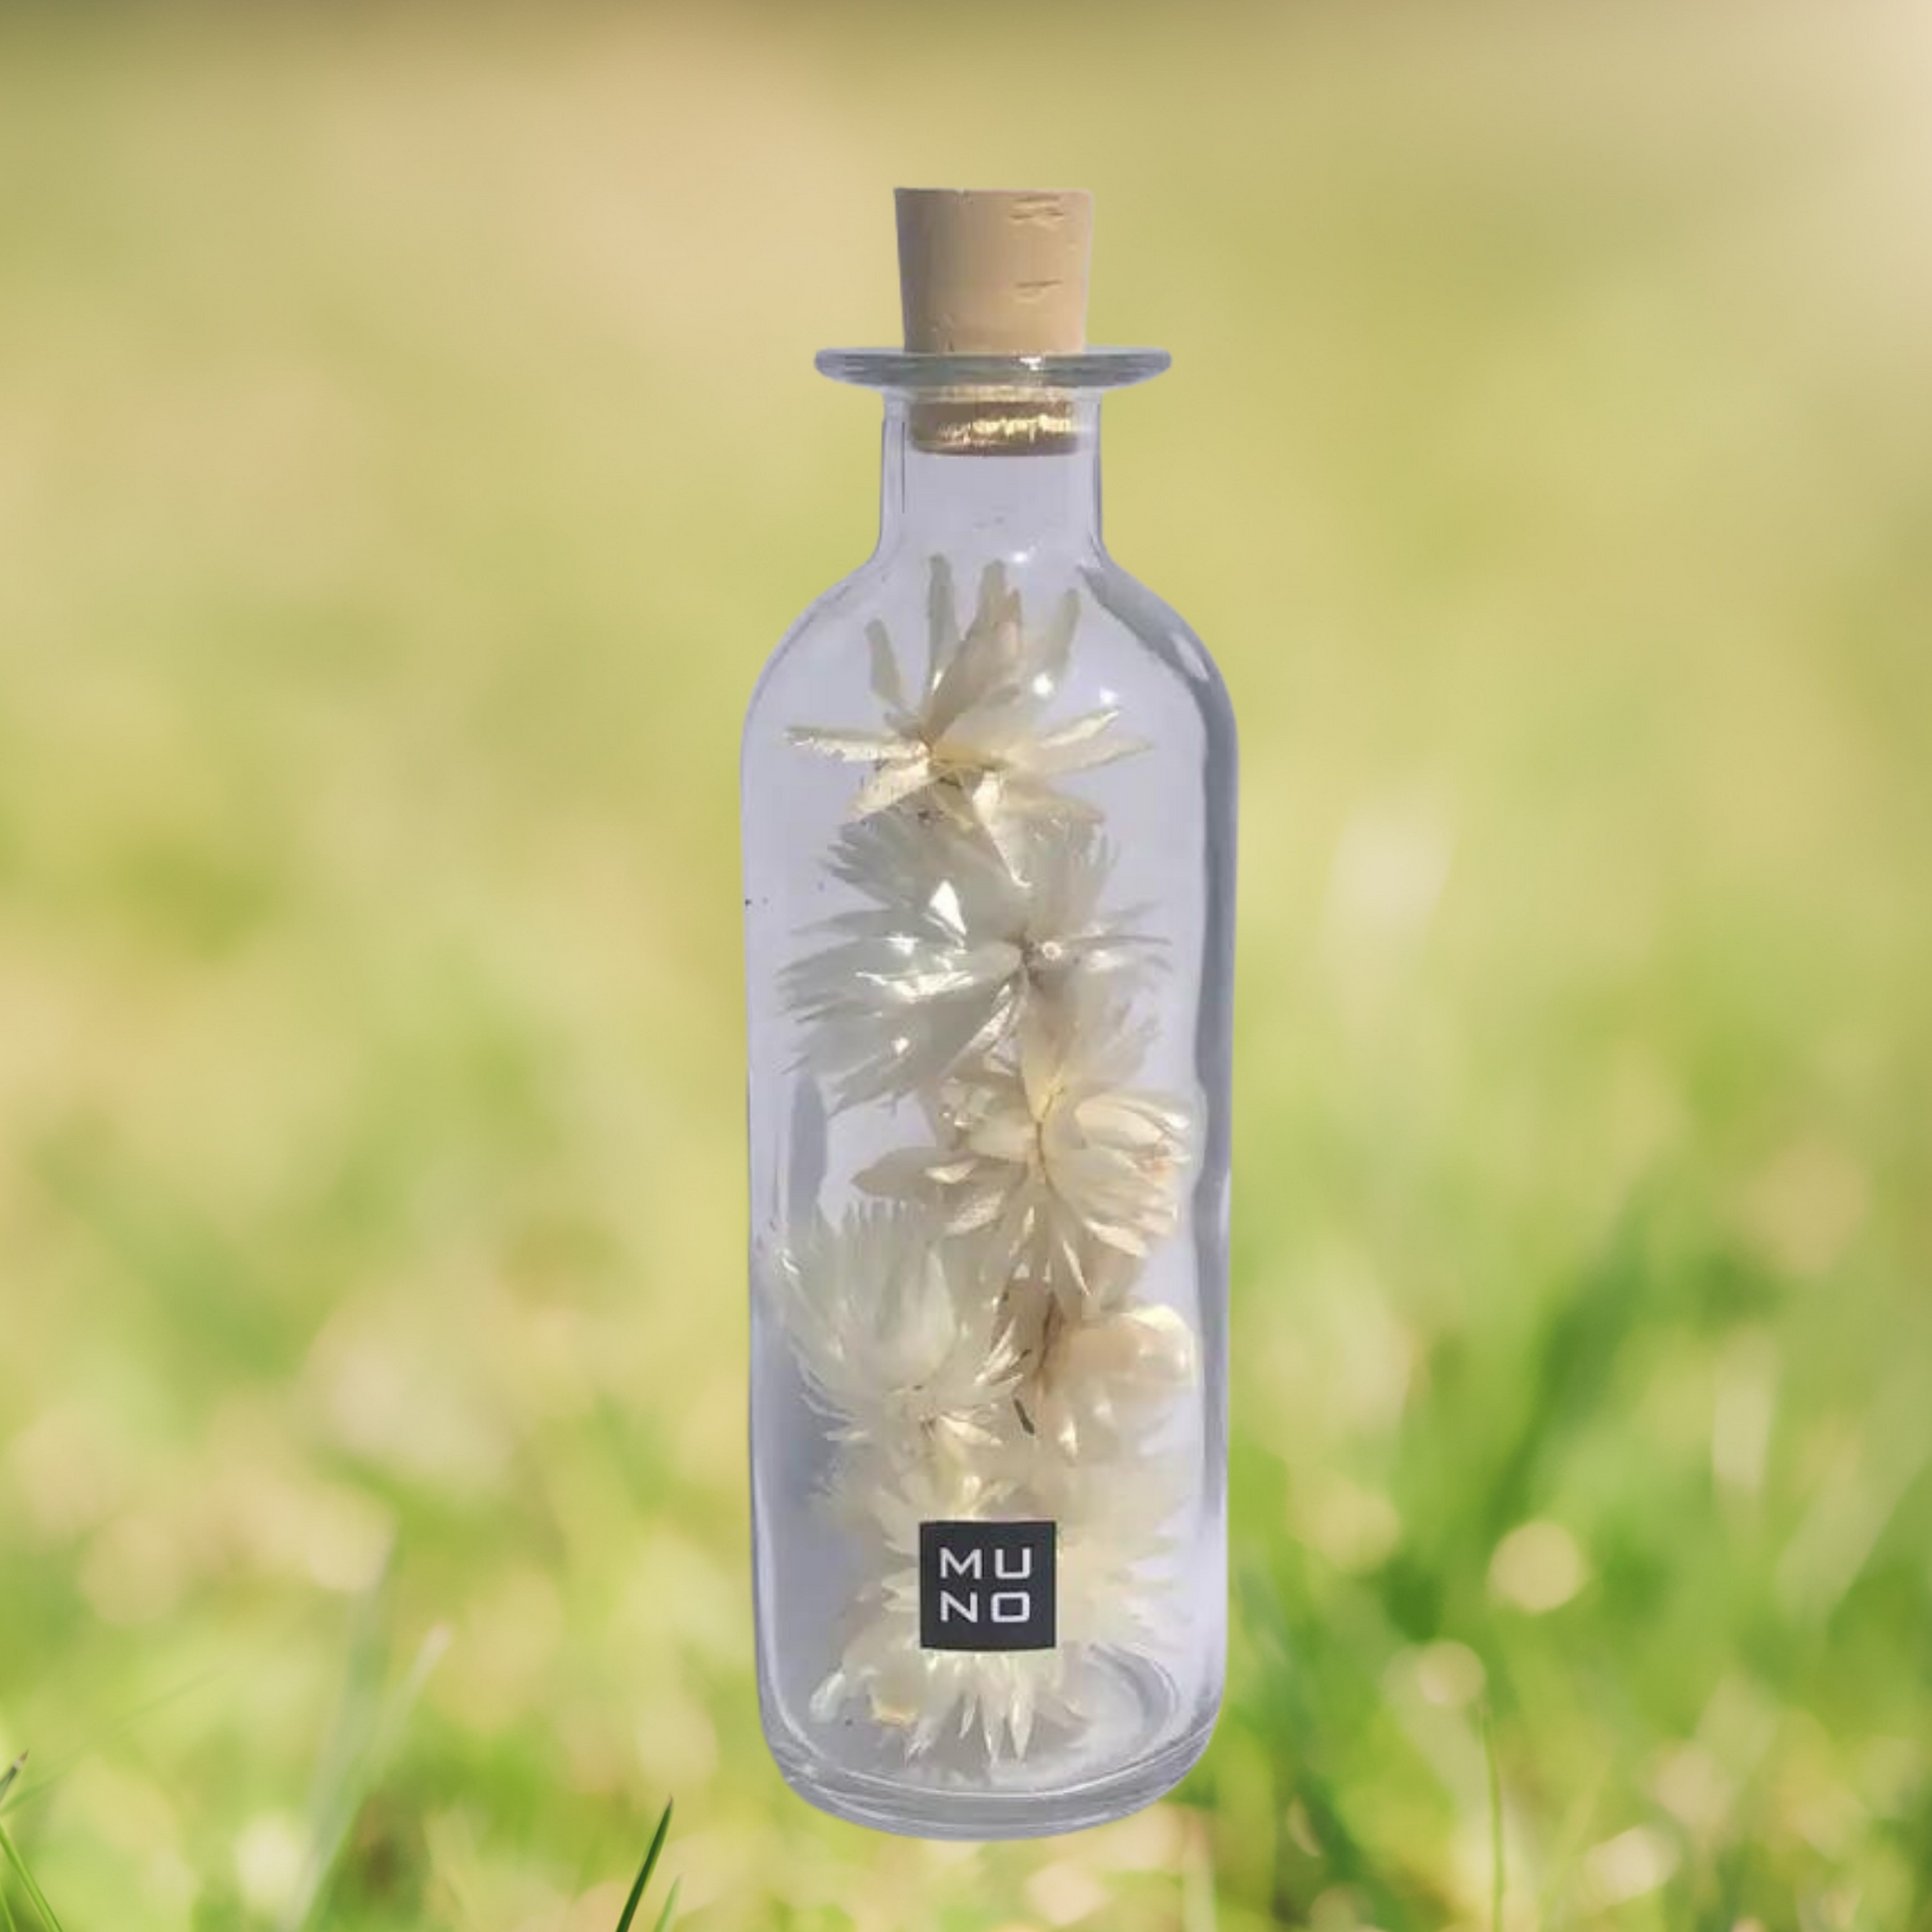 Dried Flowers - Unique Decorative Bottle - Sprigbox